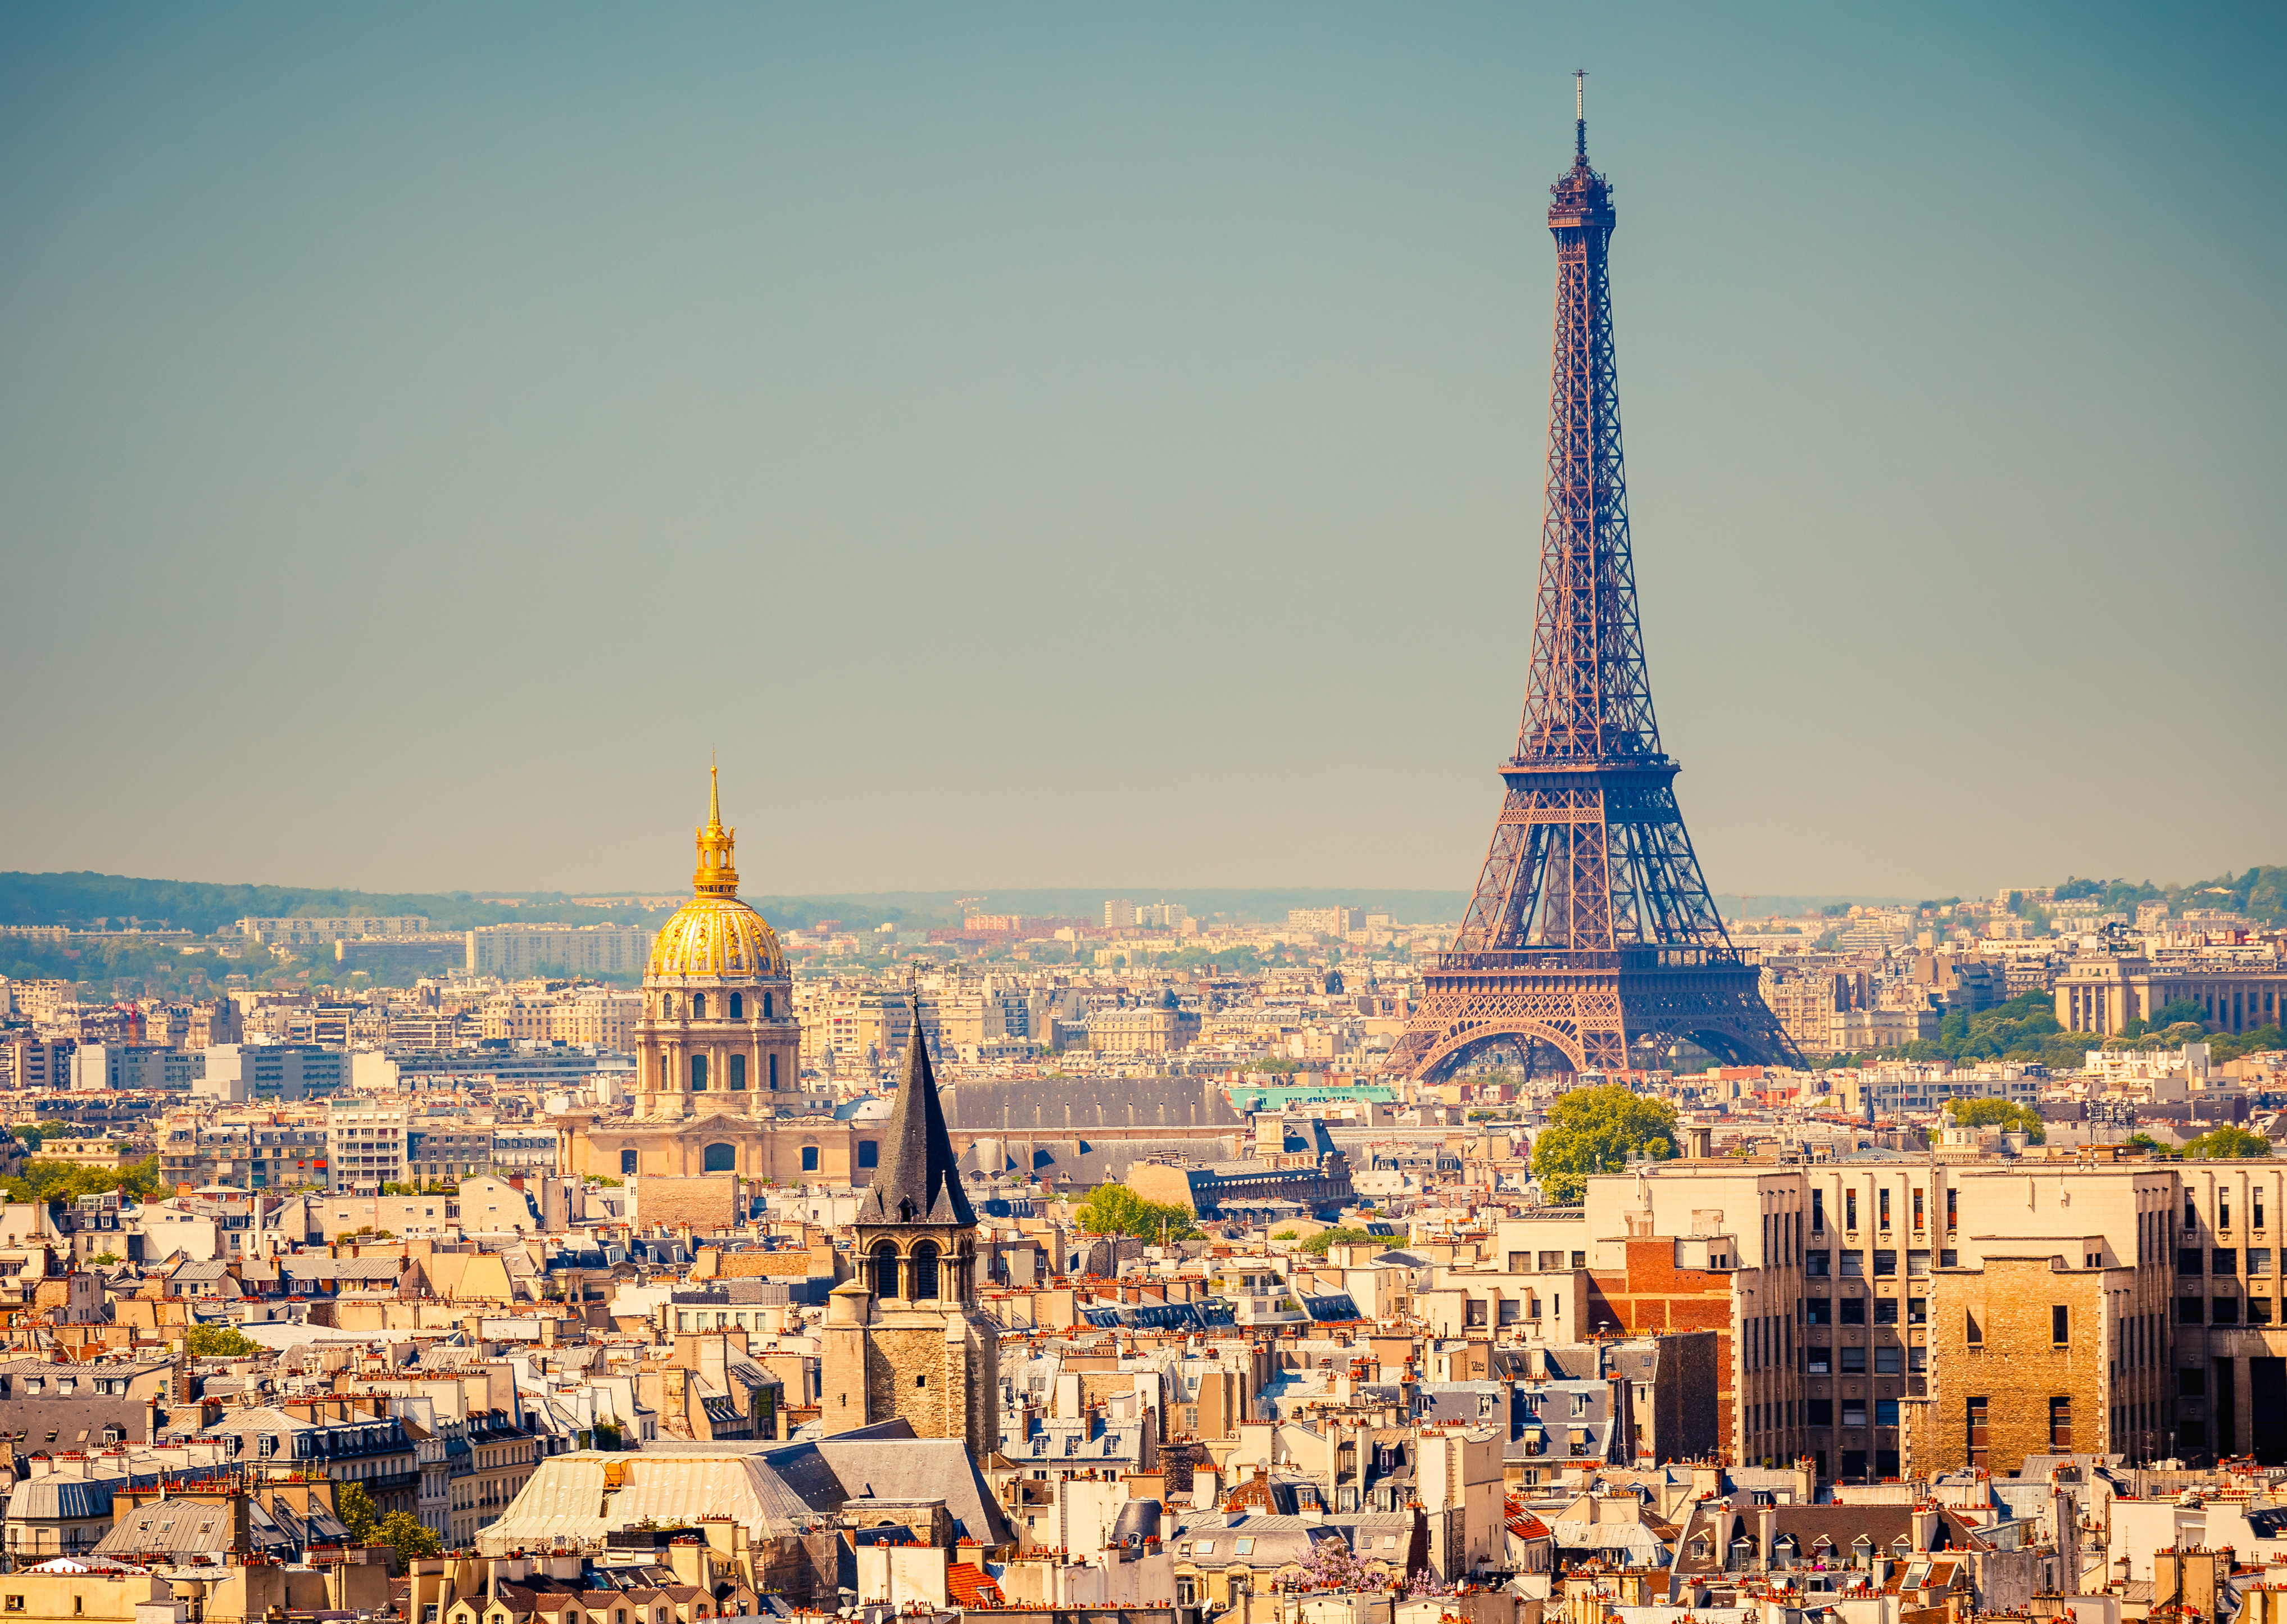 Paris selfie - Vive la difference?